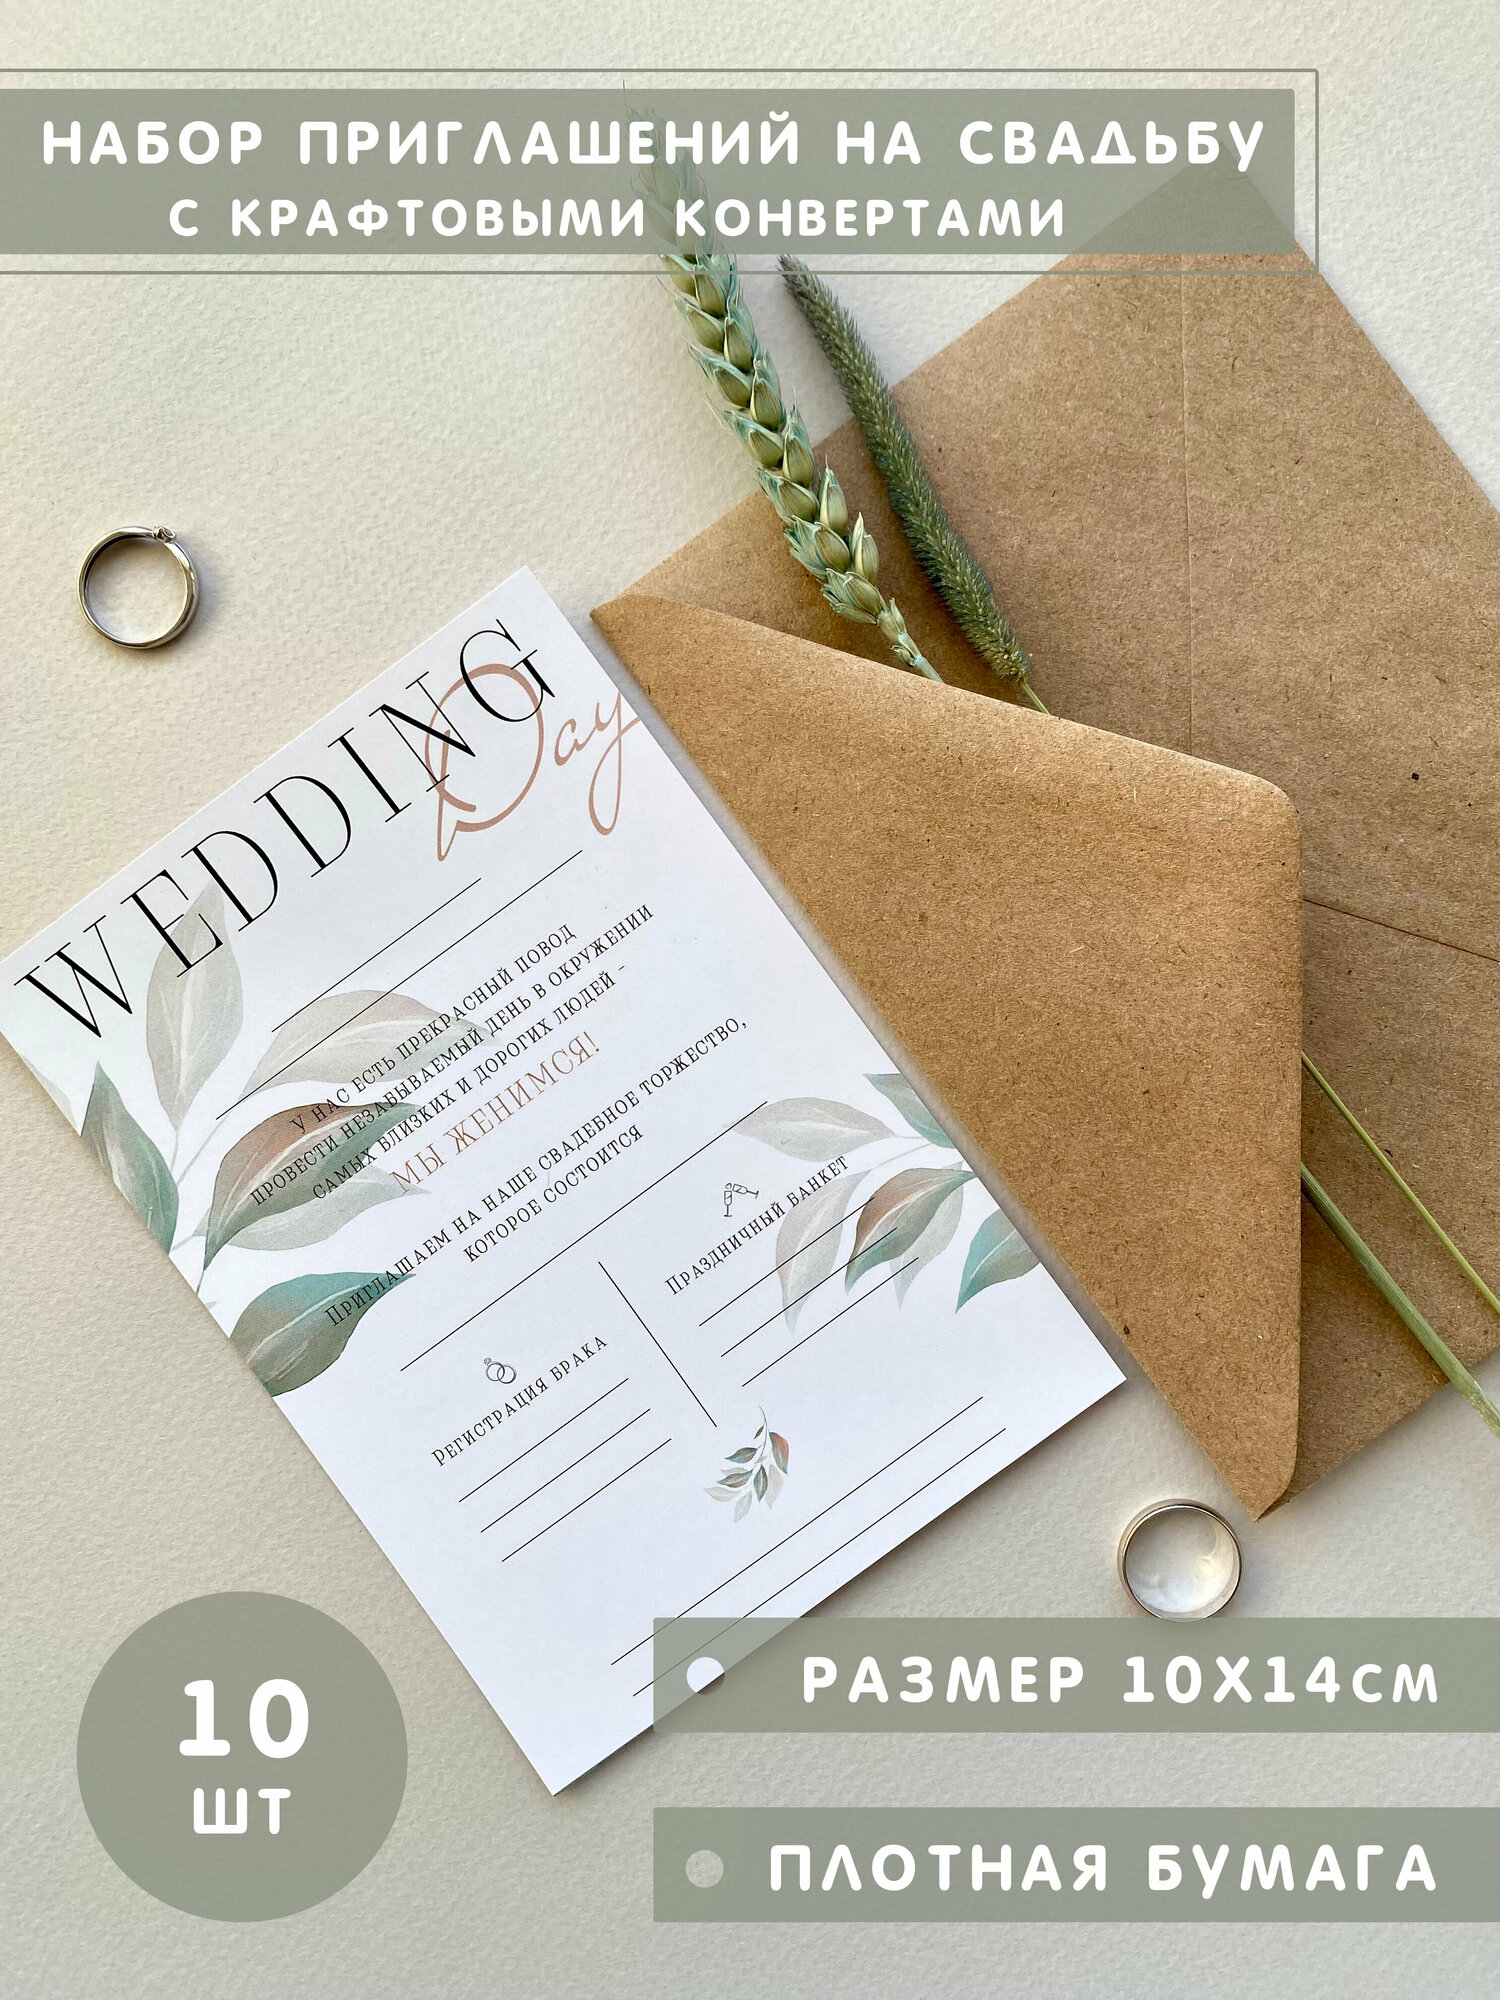 Приглашения на свадьбу Wedding Day с конвертами, 10шт